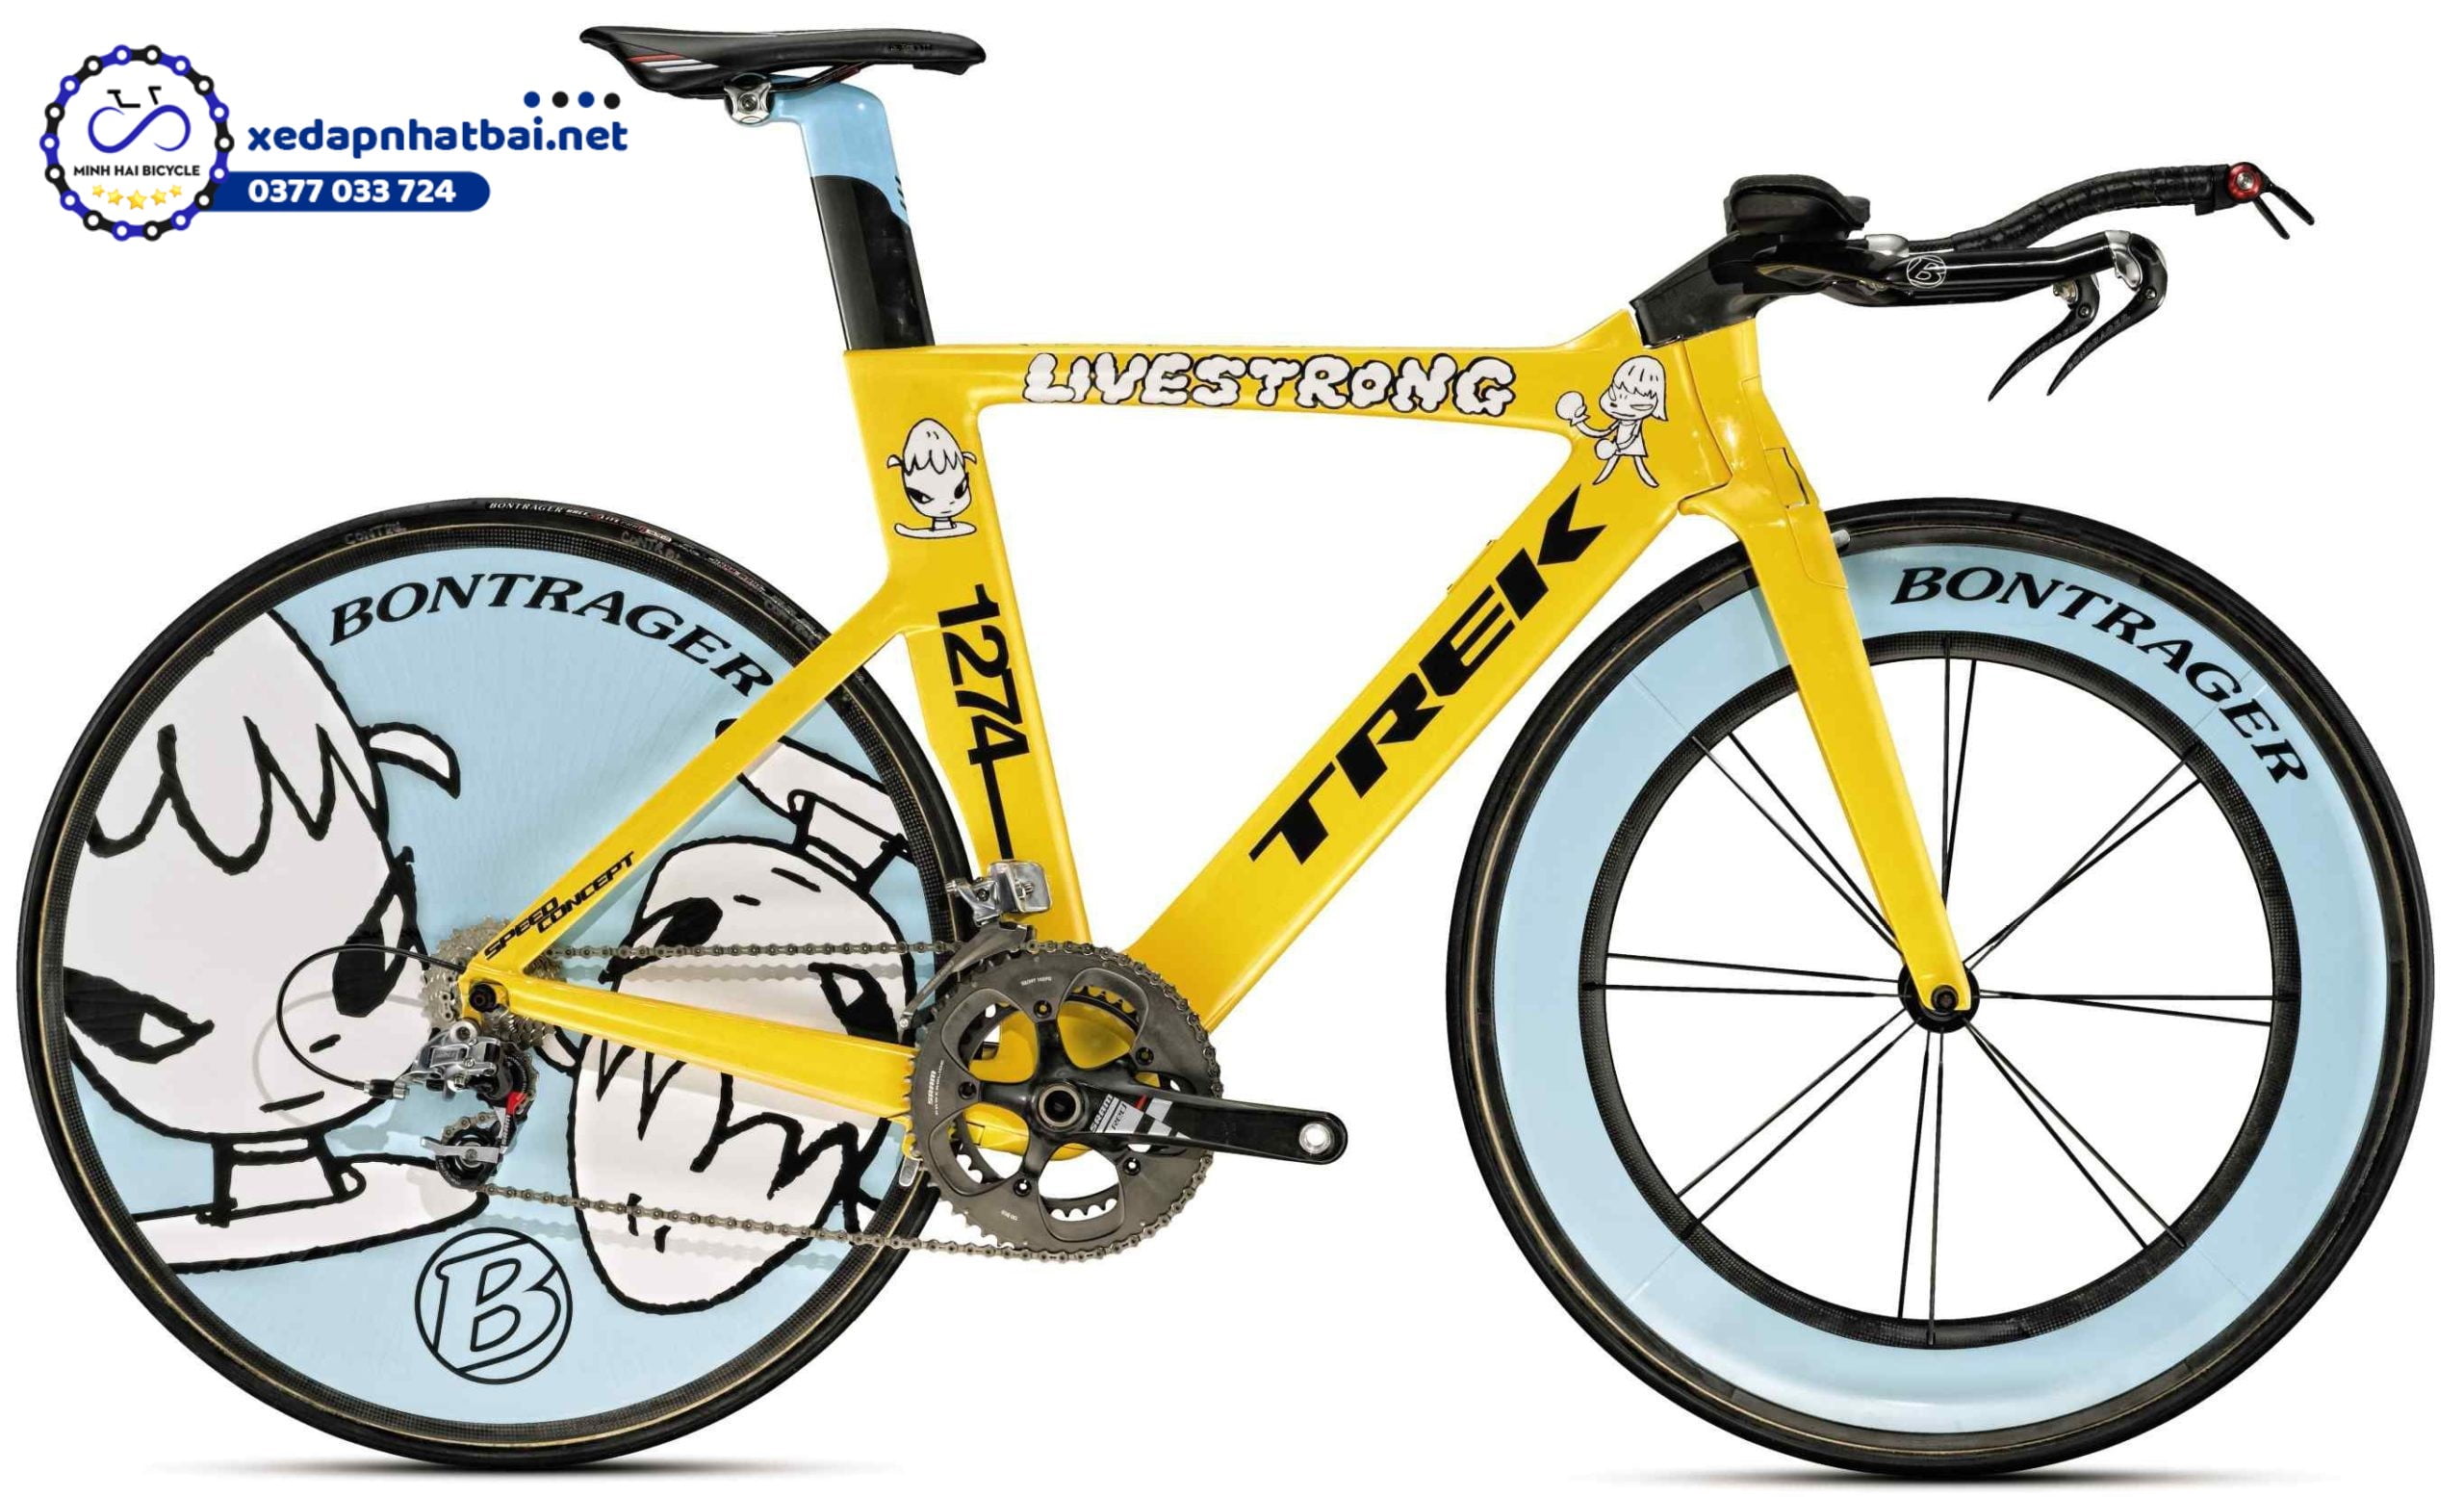 Đây là một trong những chiếc xe đạp đắt nhất thế giới và khá bắt mắt, vui nhộn. Với khung xe màu vàng và bánh xe màu xanh